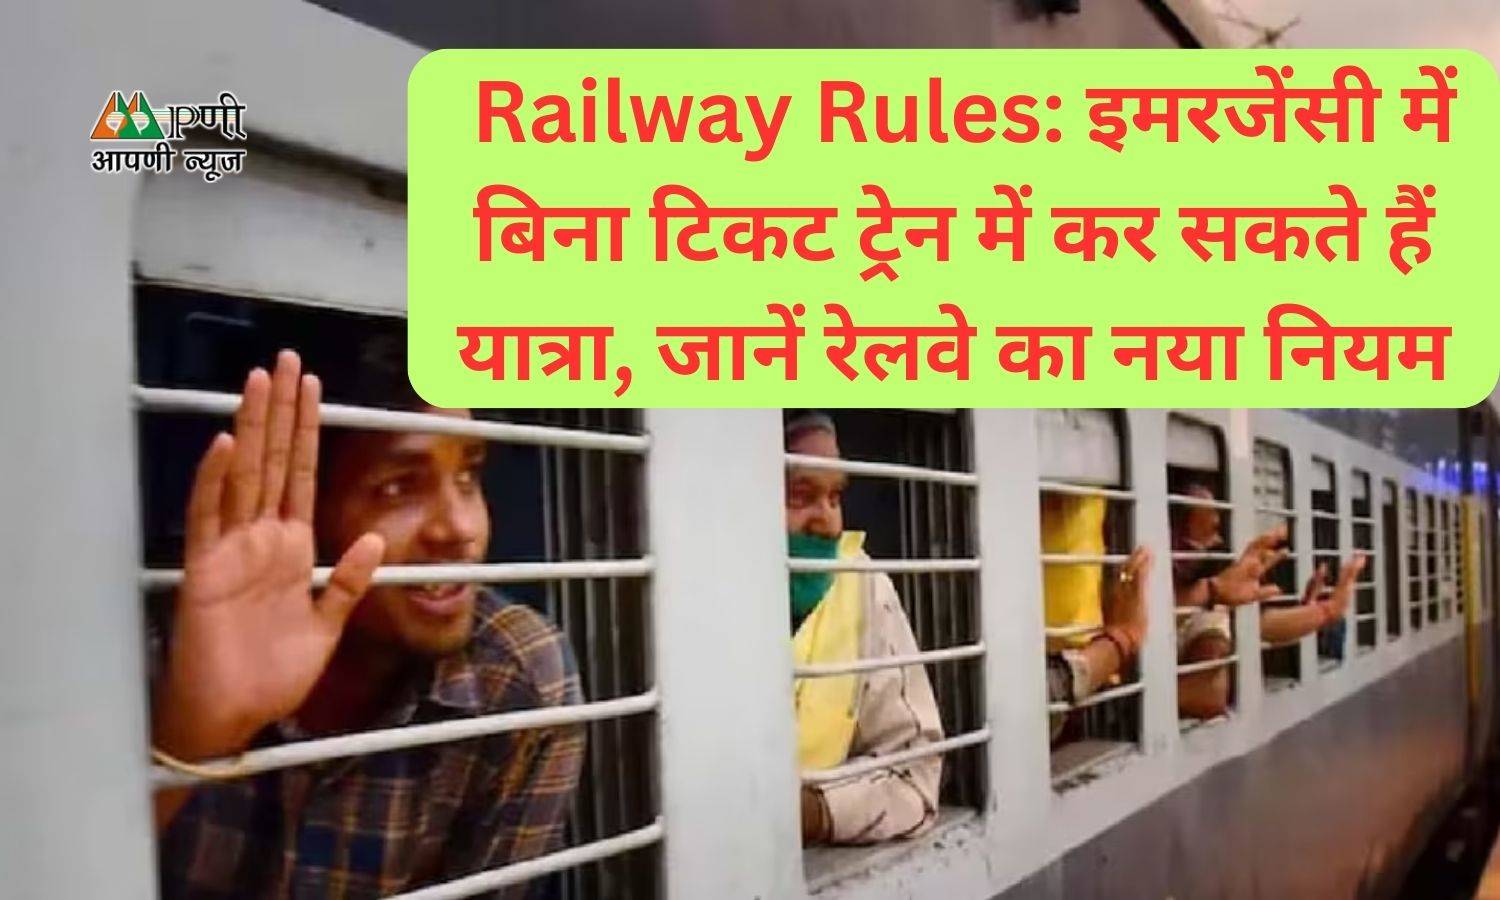 Railway Rules: इमरजेंसी में बिना टिकट ट्रेन में कर सकते हैं यात्रा, जानें रेलवे का नया नियम